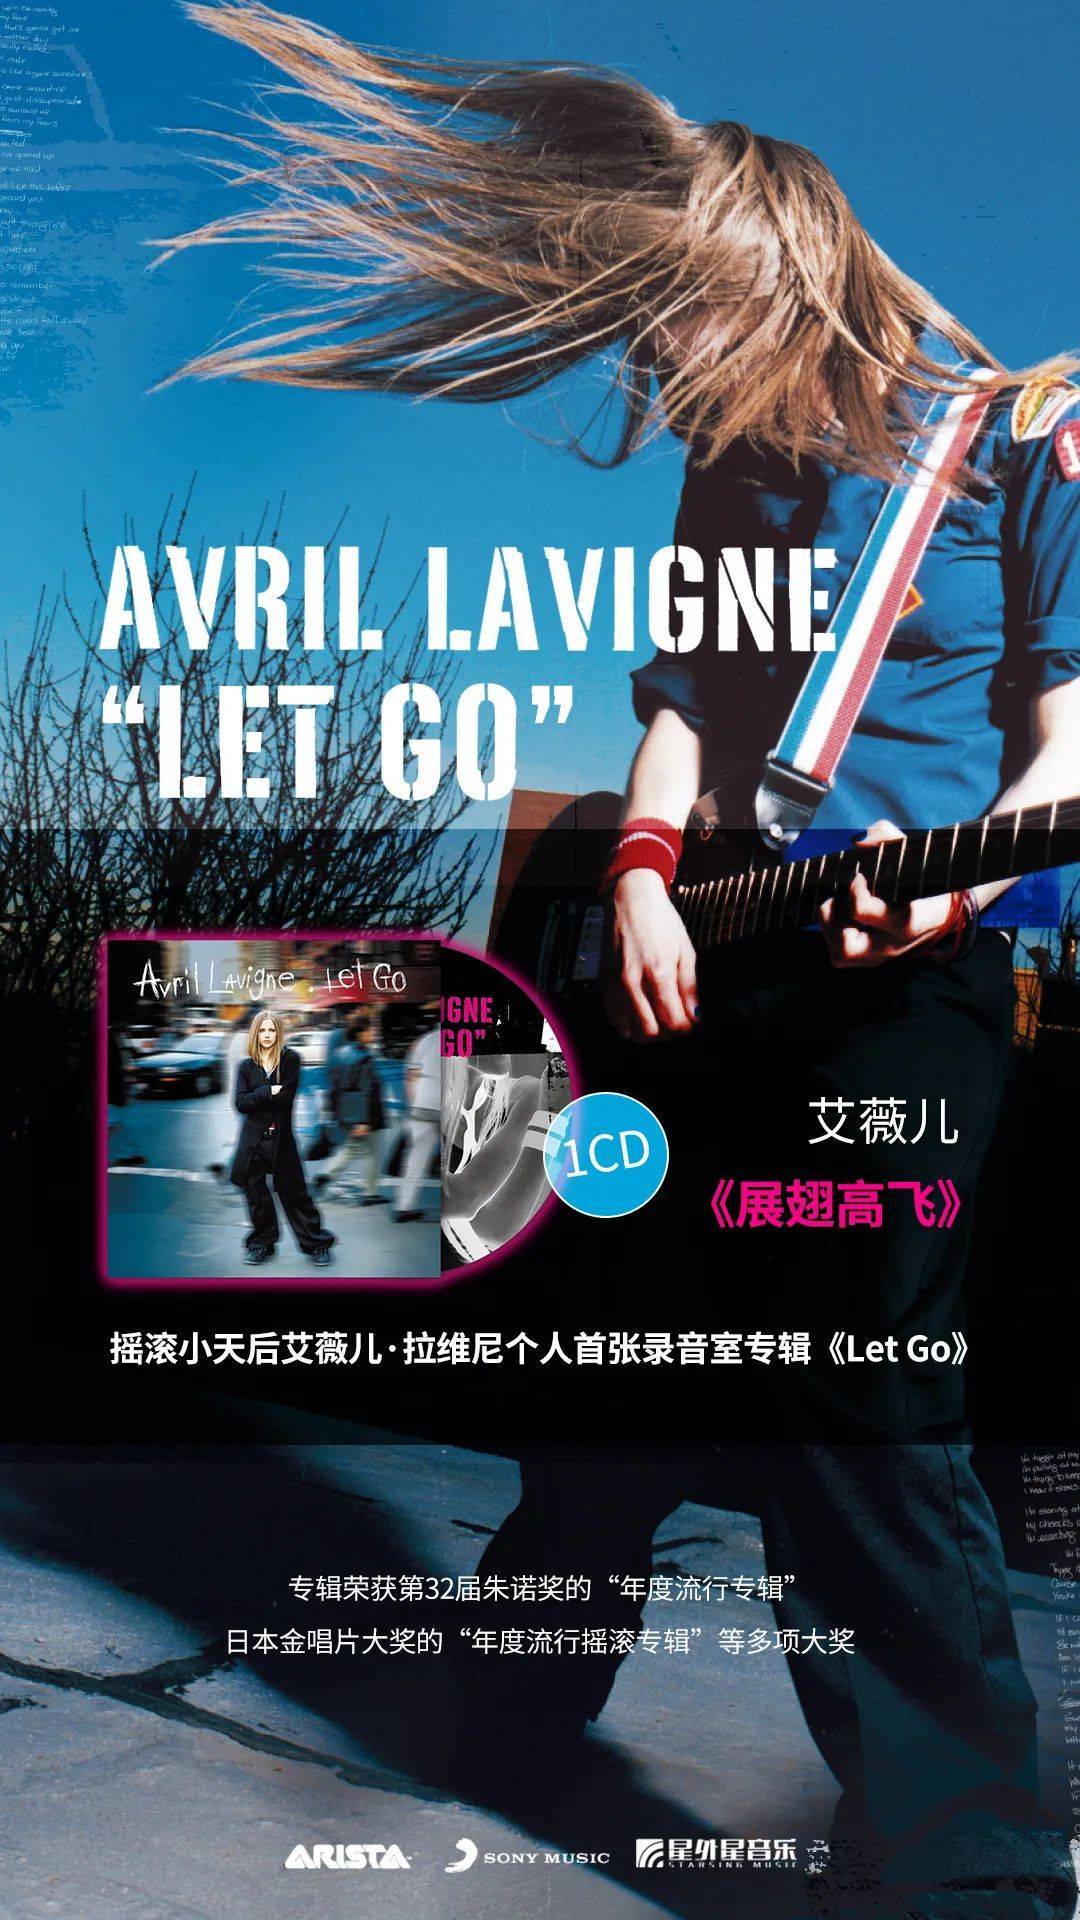 丨艾薇儿首张专辑《let go》,18岁的朋克少女展翅高飞